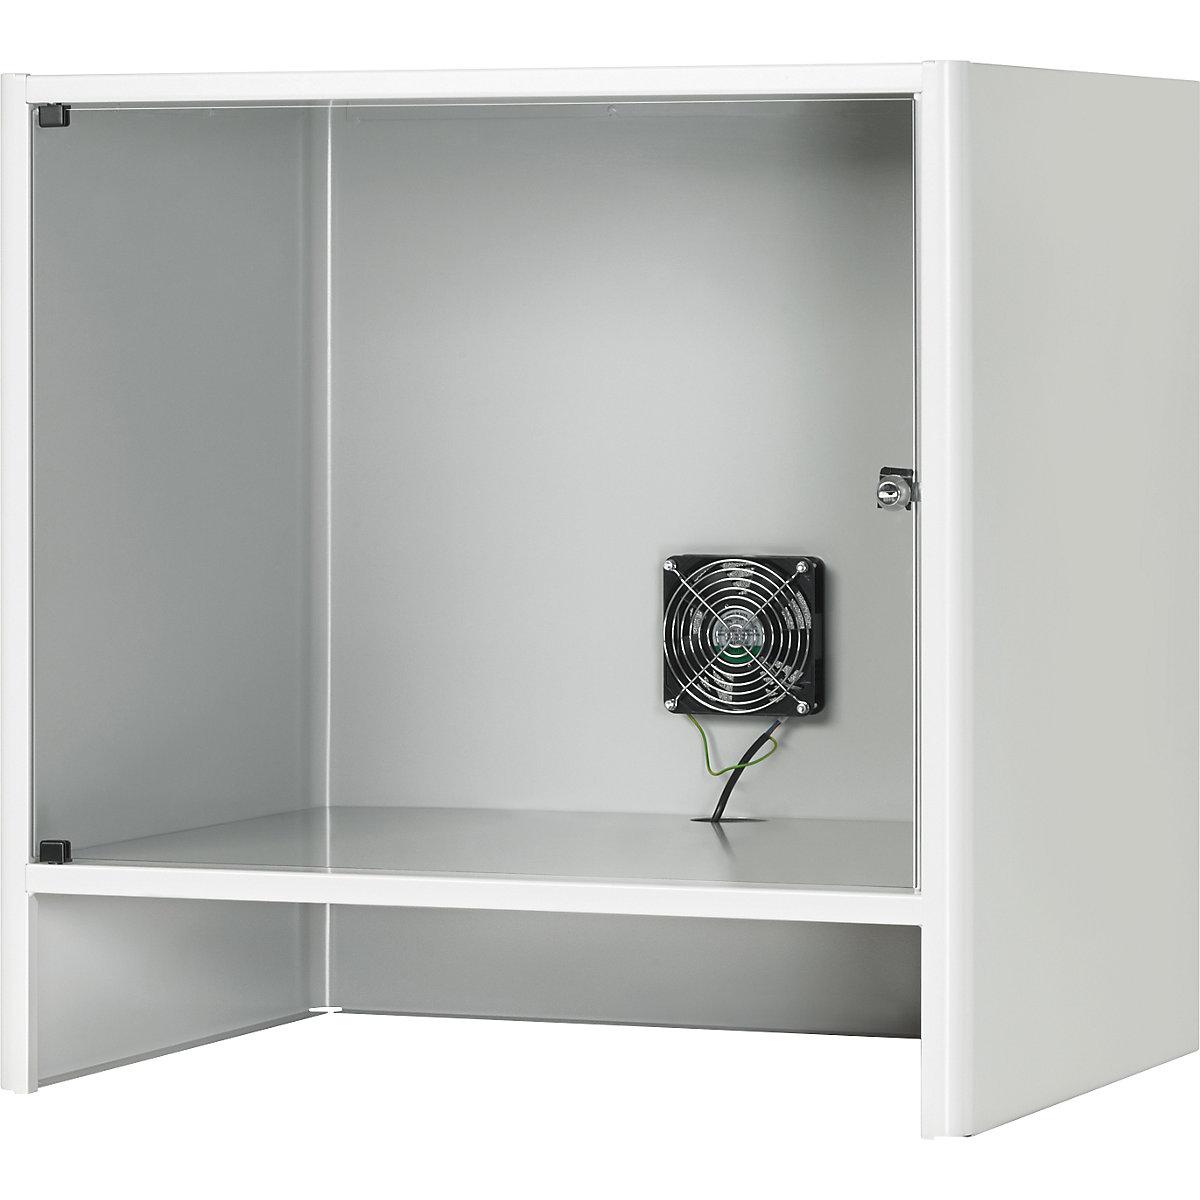 Compartimento para monitor con ventilación activa integrada - RAU